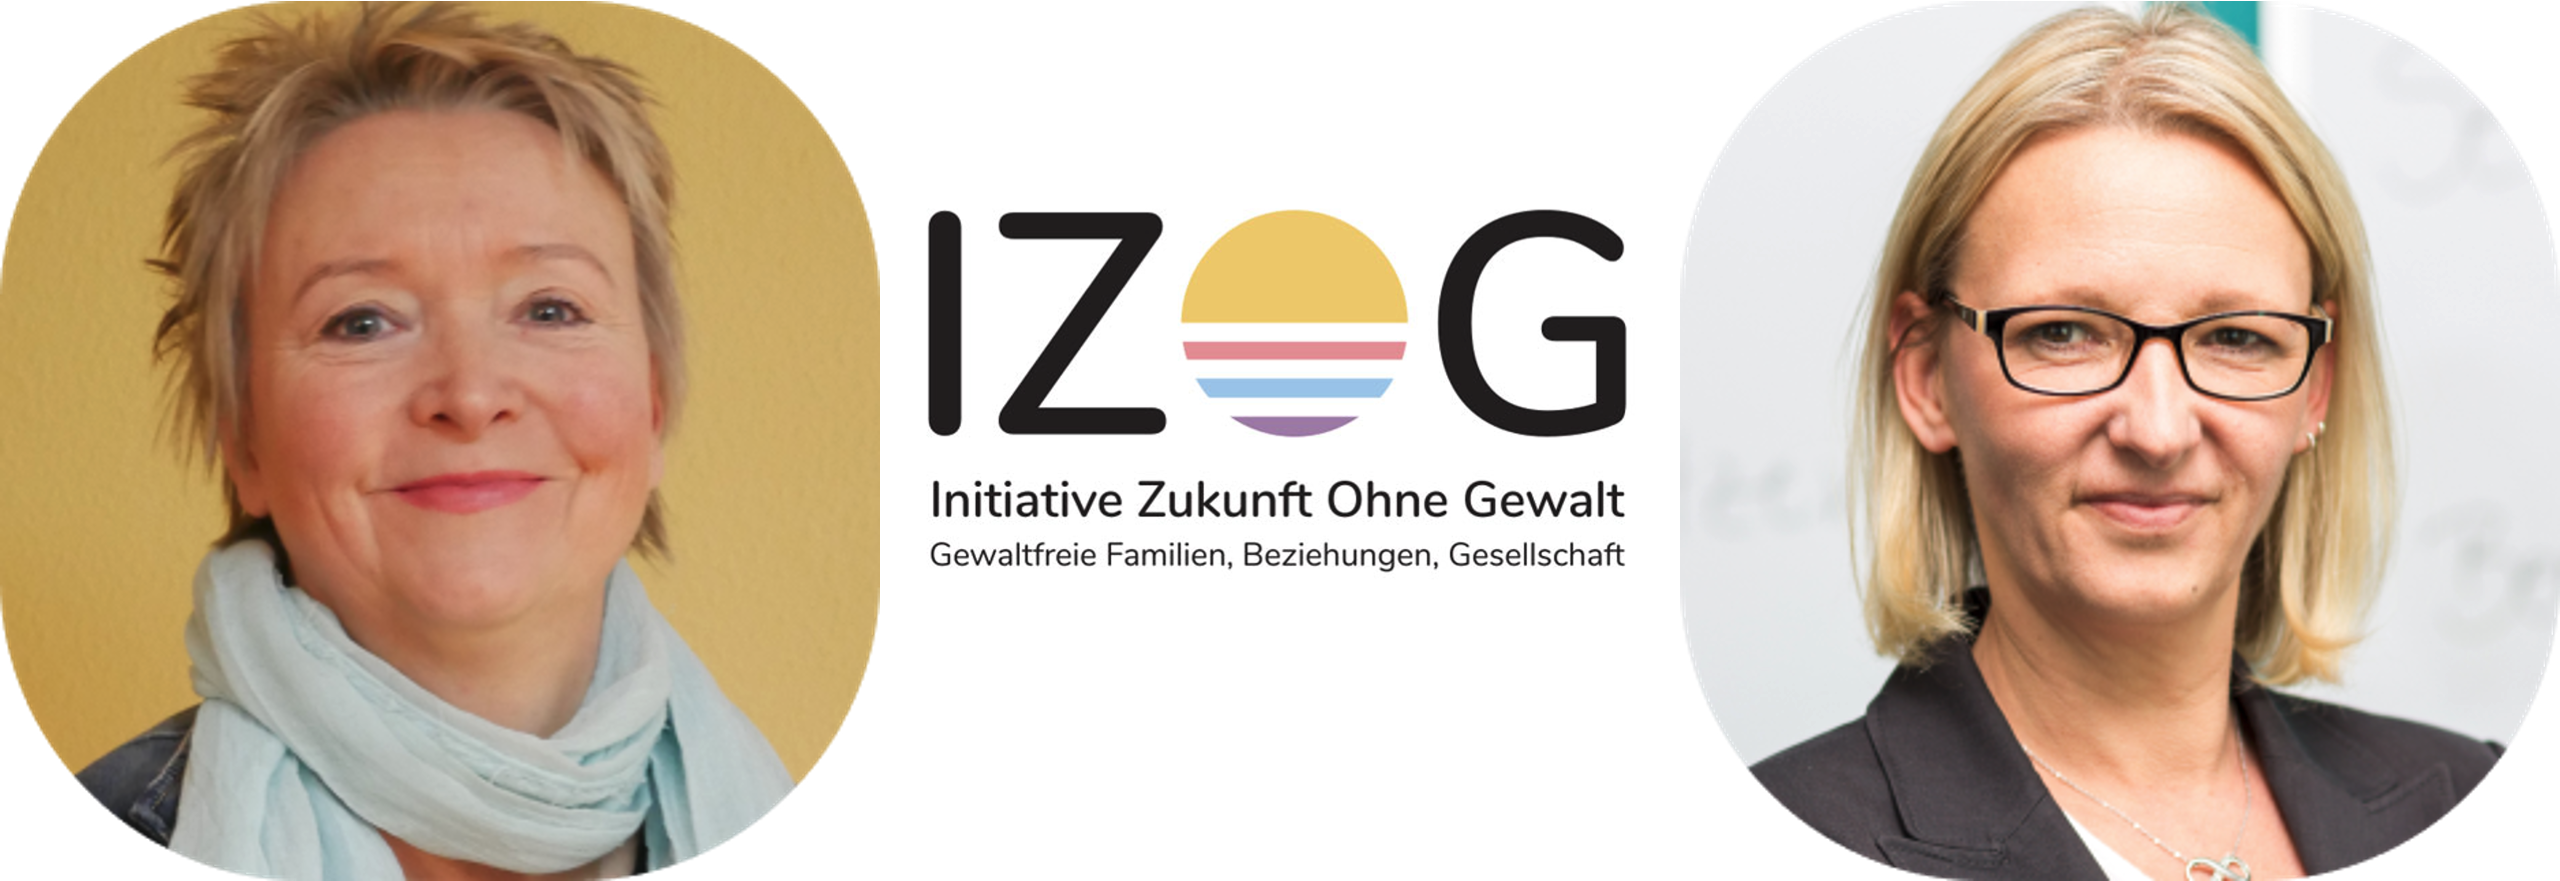 Vorstand IZOG: Wiebke Wiedeck und Kathrin Latta